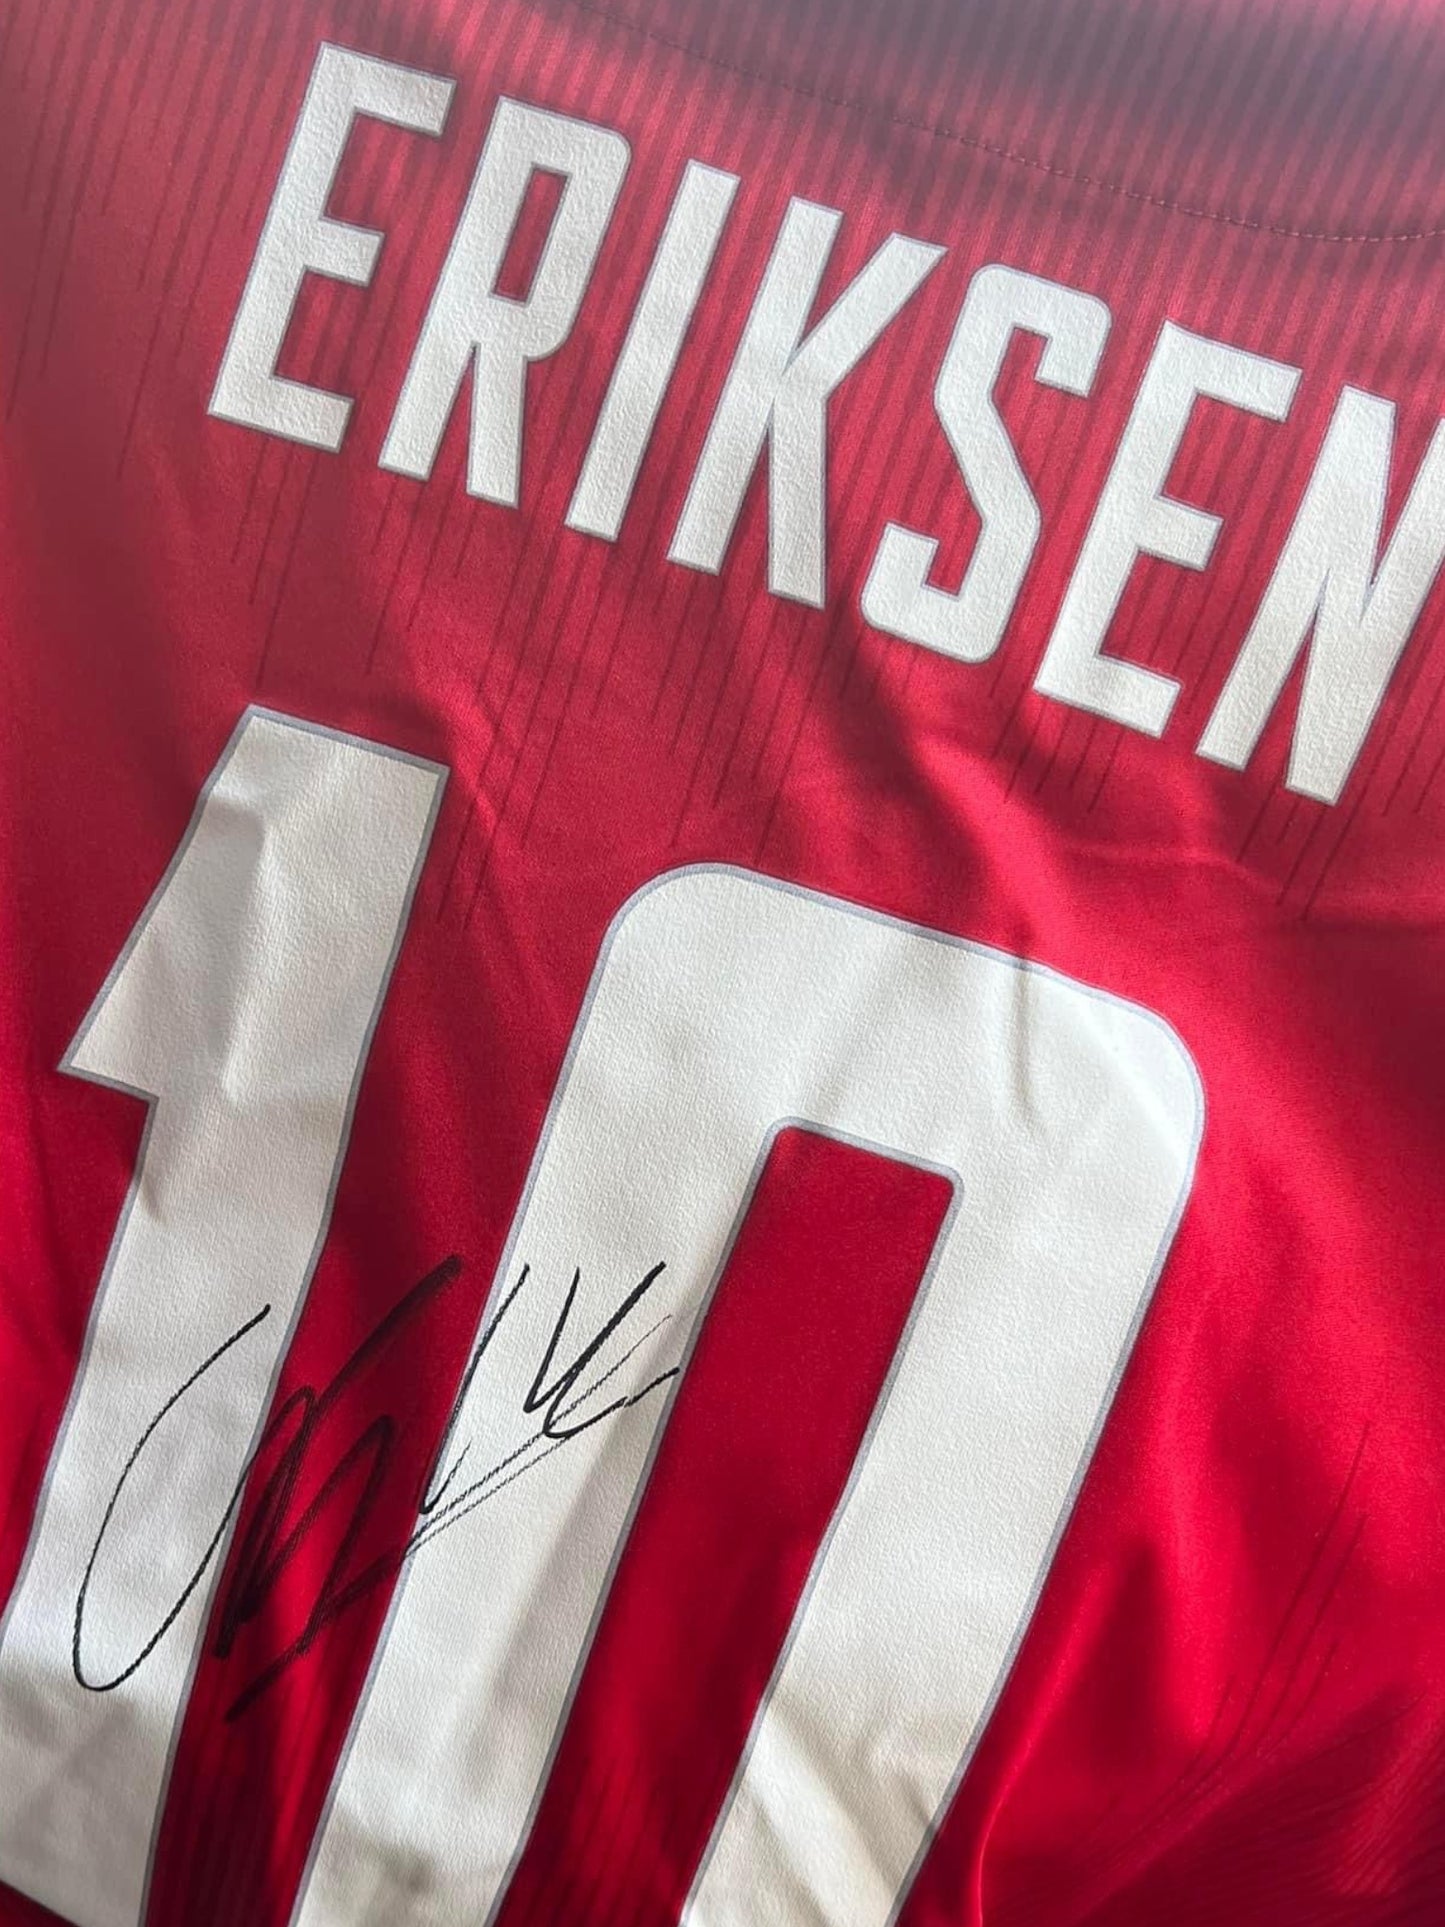 Christian Eriksen signed Denmark 20-21 Euro 2020 Home shirt